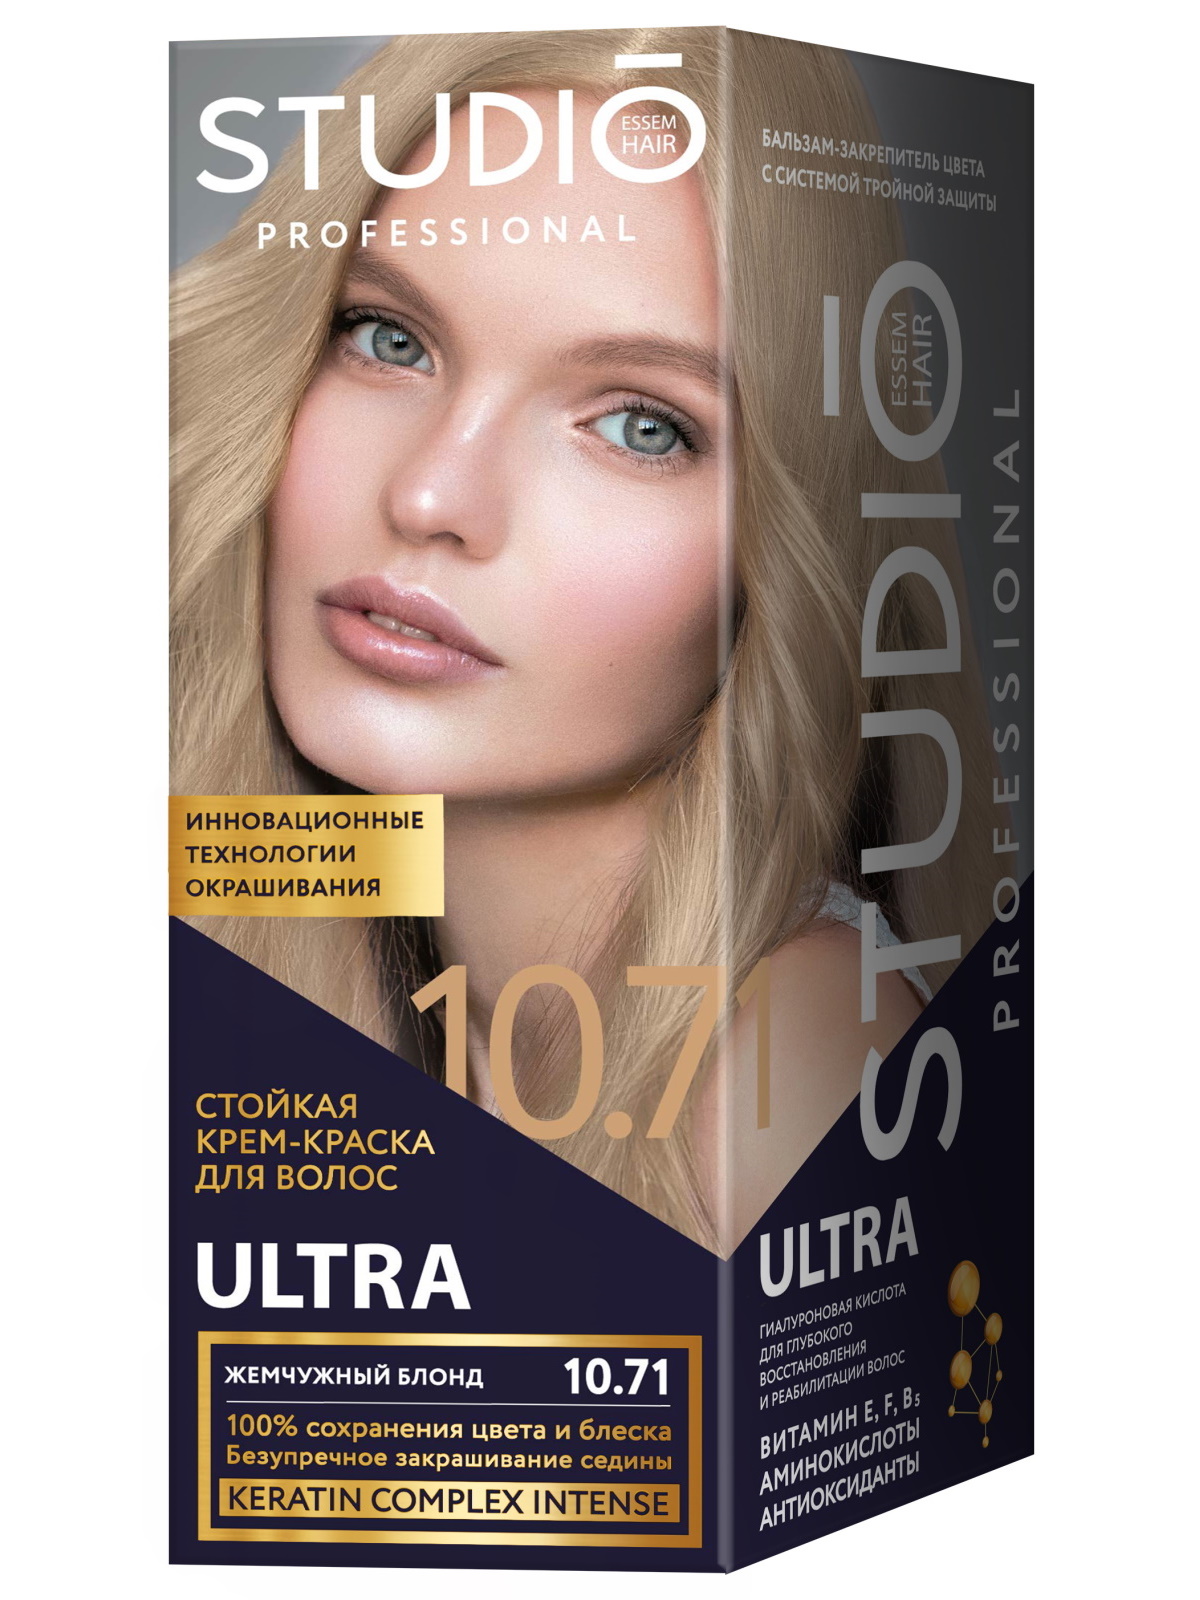 Комплект ULTRA для окрашивания волос STUDIO PROFESSIONAL 10.71 жемчужный блонд 2*50+15 мл пластичная паста для волос rewind 06